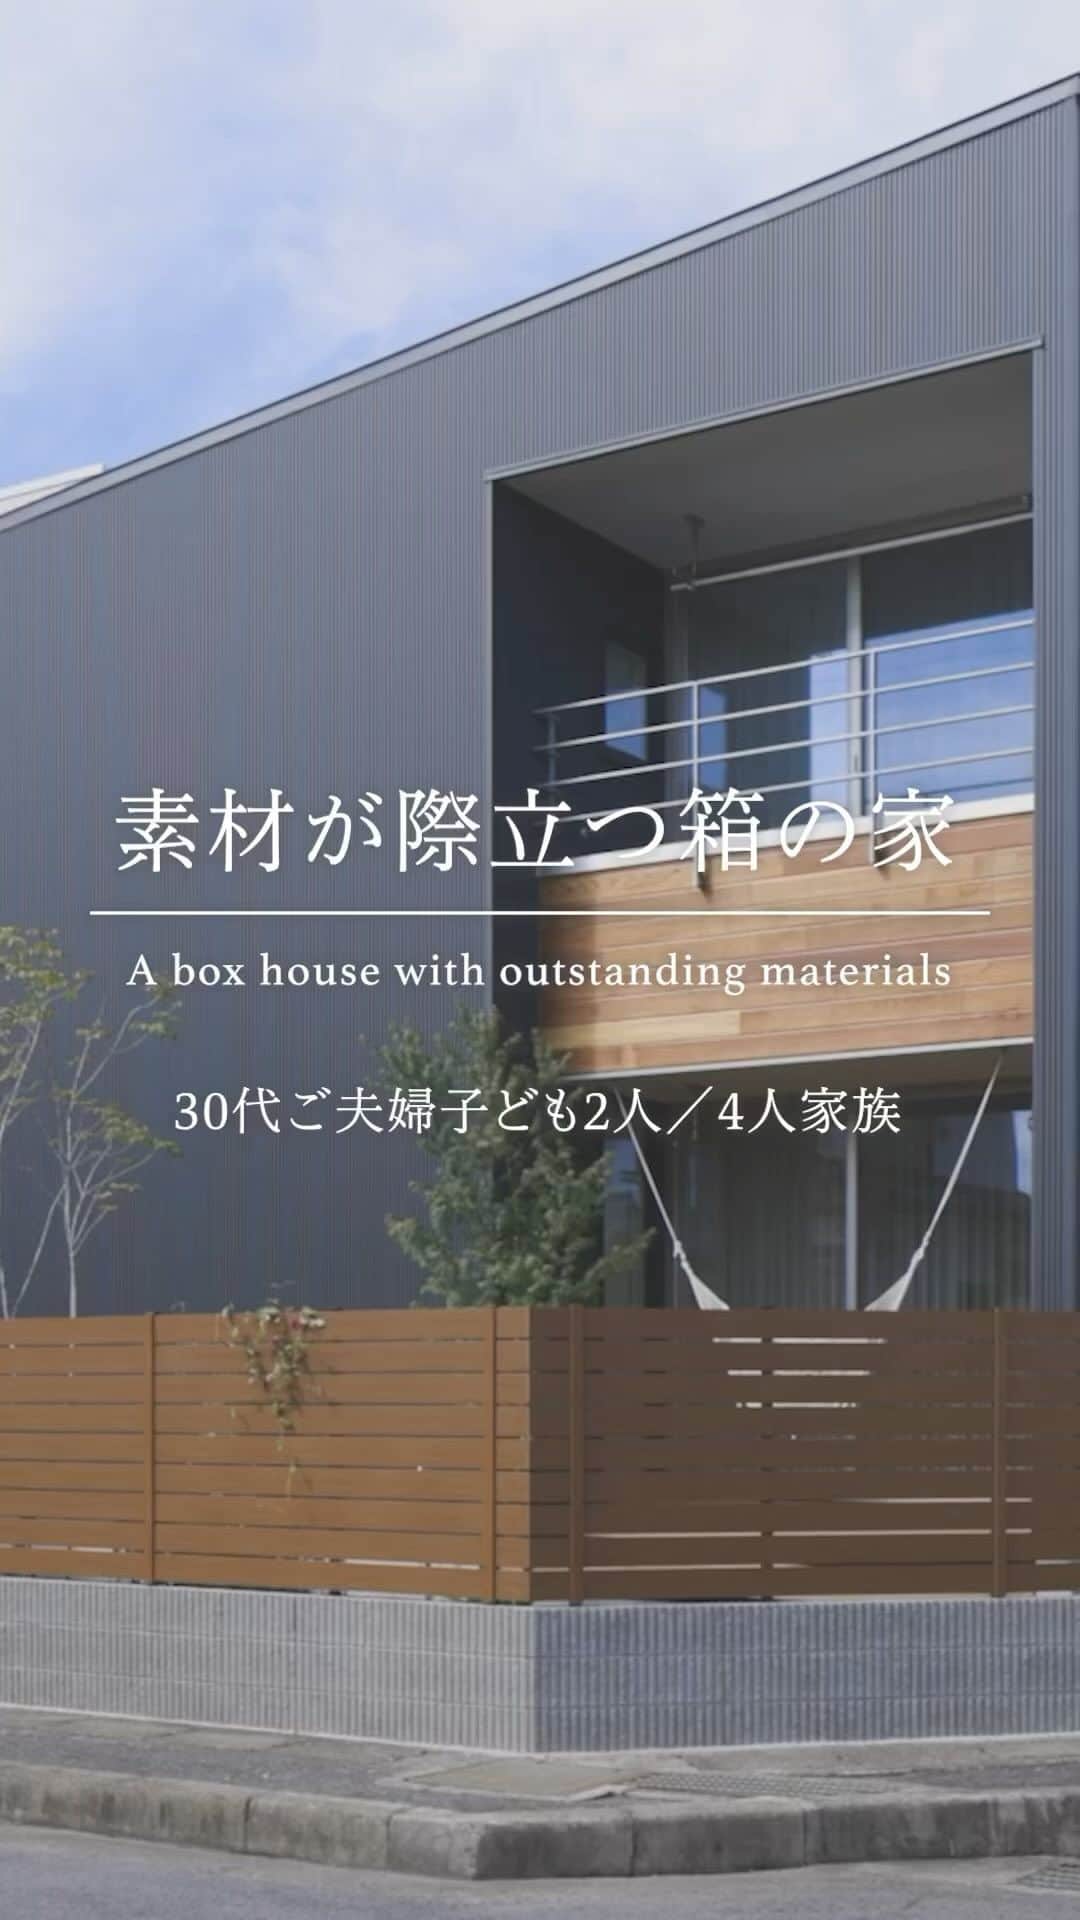 ルポハウス一級建築士事務所のインスタグラム：「・ 《素材が際だつ箱の家》大津市  角地に建ち、見る角度で違う表情が新鮮な佇まい。 レッドシダーのあしらいが、ブラックのガルバリウムに映えます。 ・ ・ ・ 担当設計士/橋本健史 @_kenji_hashimoto_ ・ ・ ・ 𓐌𓐌𓐌𓐌𓐌𓐌𓐌𓐌𓐌𓐌𓐌𓐌𓐌𓐌𓐌𓐌𓐌𓐌  ルポハウスの施工事例はこちらまで☞ @reposhouse 𓐌𓐌𓐌𓐌𓐌𓐌𓐌𓐌𓐌𓐌𓐌𓐌𓐌𓐌𓐌𓐌𓐌𓐌 ルポハウス はちょっとかっこいい家 を"友人のために" という思いでつくっています。 一生に一度の#マイホーム。 「あなたにしかできない」×「ルポハウスだからできる」で、 私たちだけの#家づくり を思いっきり楽しんでみませんか？！ ・ ・ ・ #住宅 #注文住宅 #新築一戸建て #家づくりアイデア #マイホーム計画  #外観デザイン #外観イメージ #ガルバリウム #ブラックガルバ #塗り壁 #トラバーチン  #レッドシダー  #玄関インテリア #名古屋モザイクタイル #コットメント #無垢床 #ナラ床 #2way玄関  #階段インテリア  #ひな壇階段  #リビングインテリア #造作tvボード  #キッチンインテリア  #ラクシーナキッチン  #造作洗面台  #シェヴロンウォール」